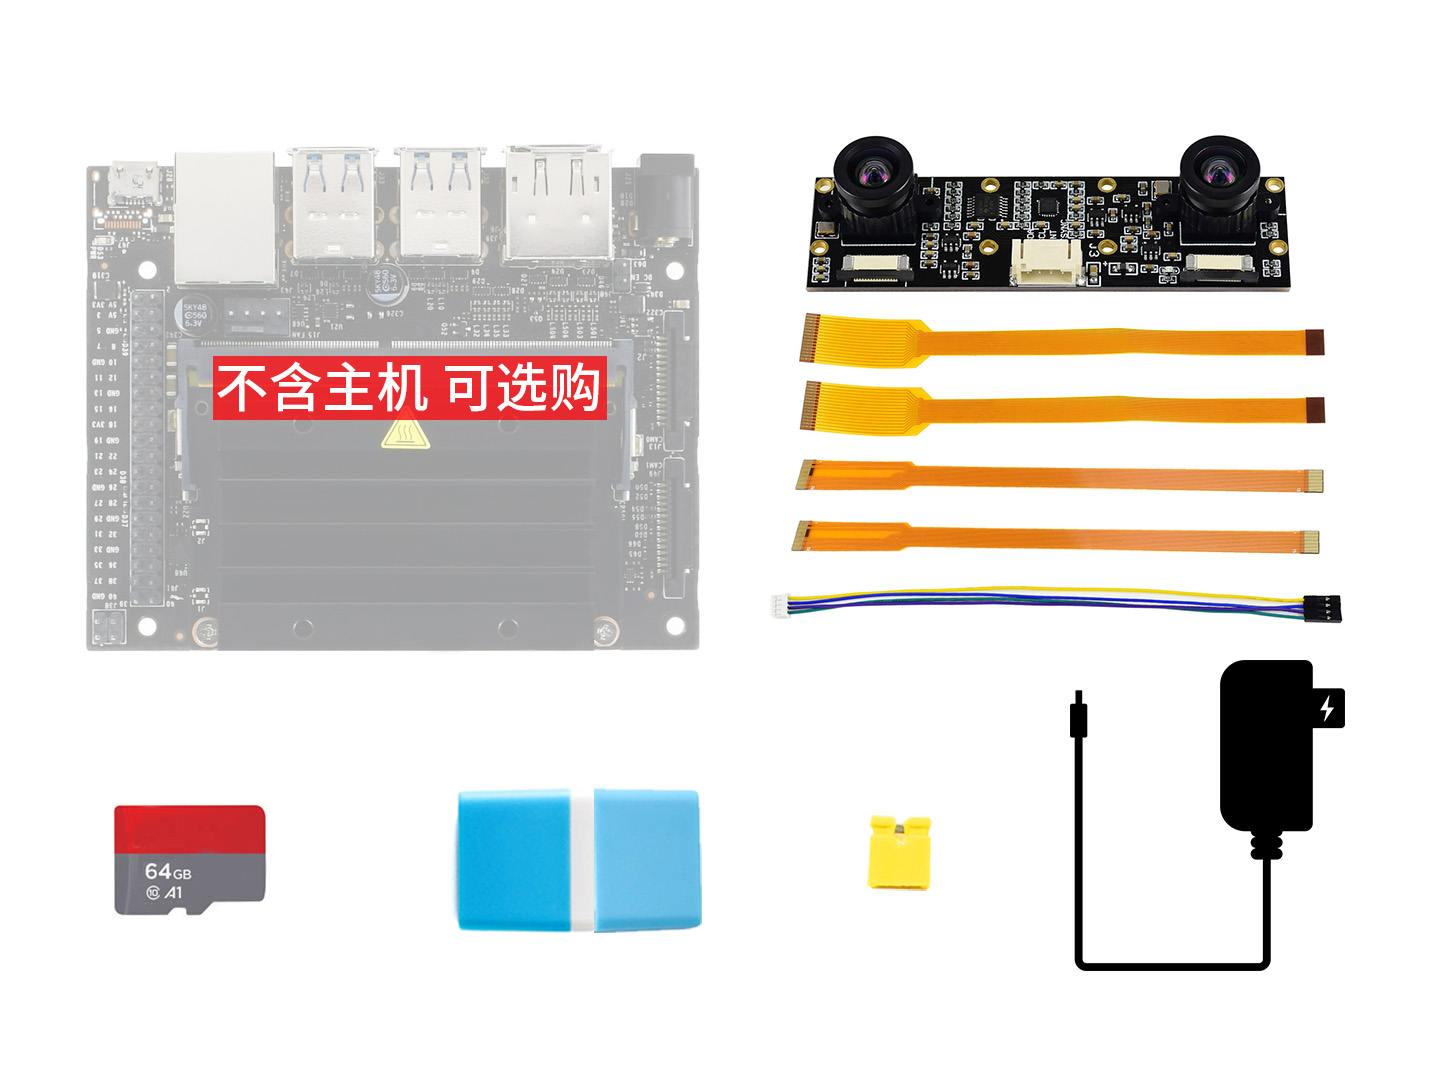 英伟达 Jetson Nano Developer Kit 摄像头配件包D 含摄像头 64G SD卡 电源等